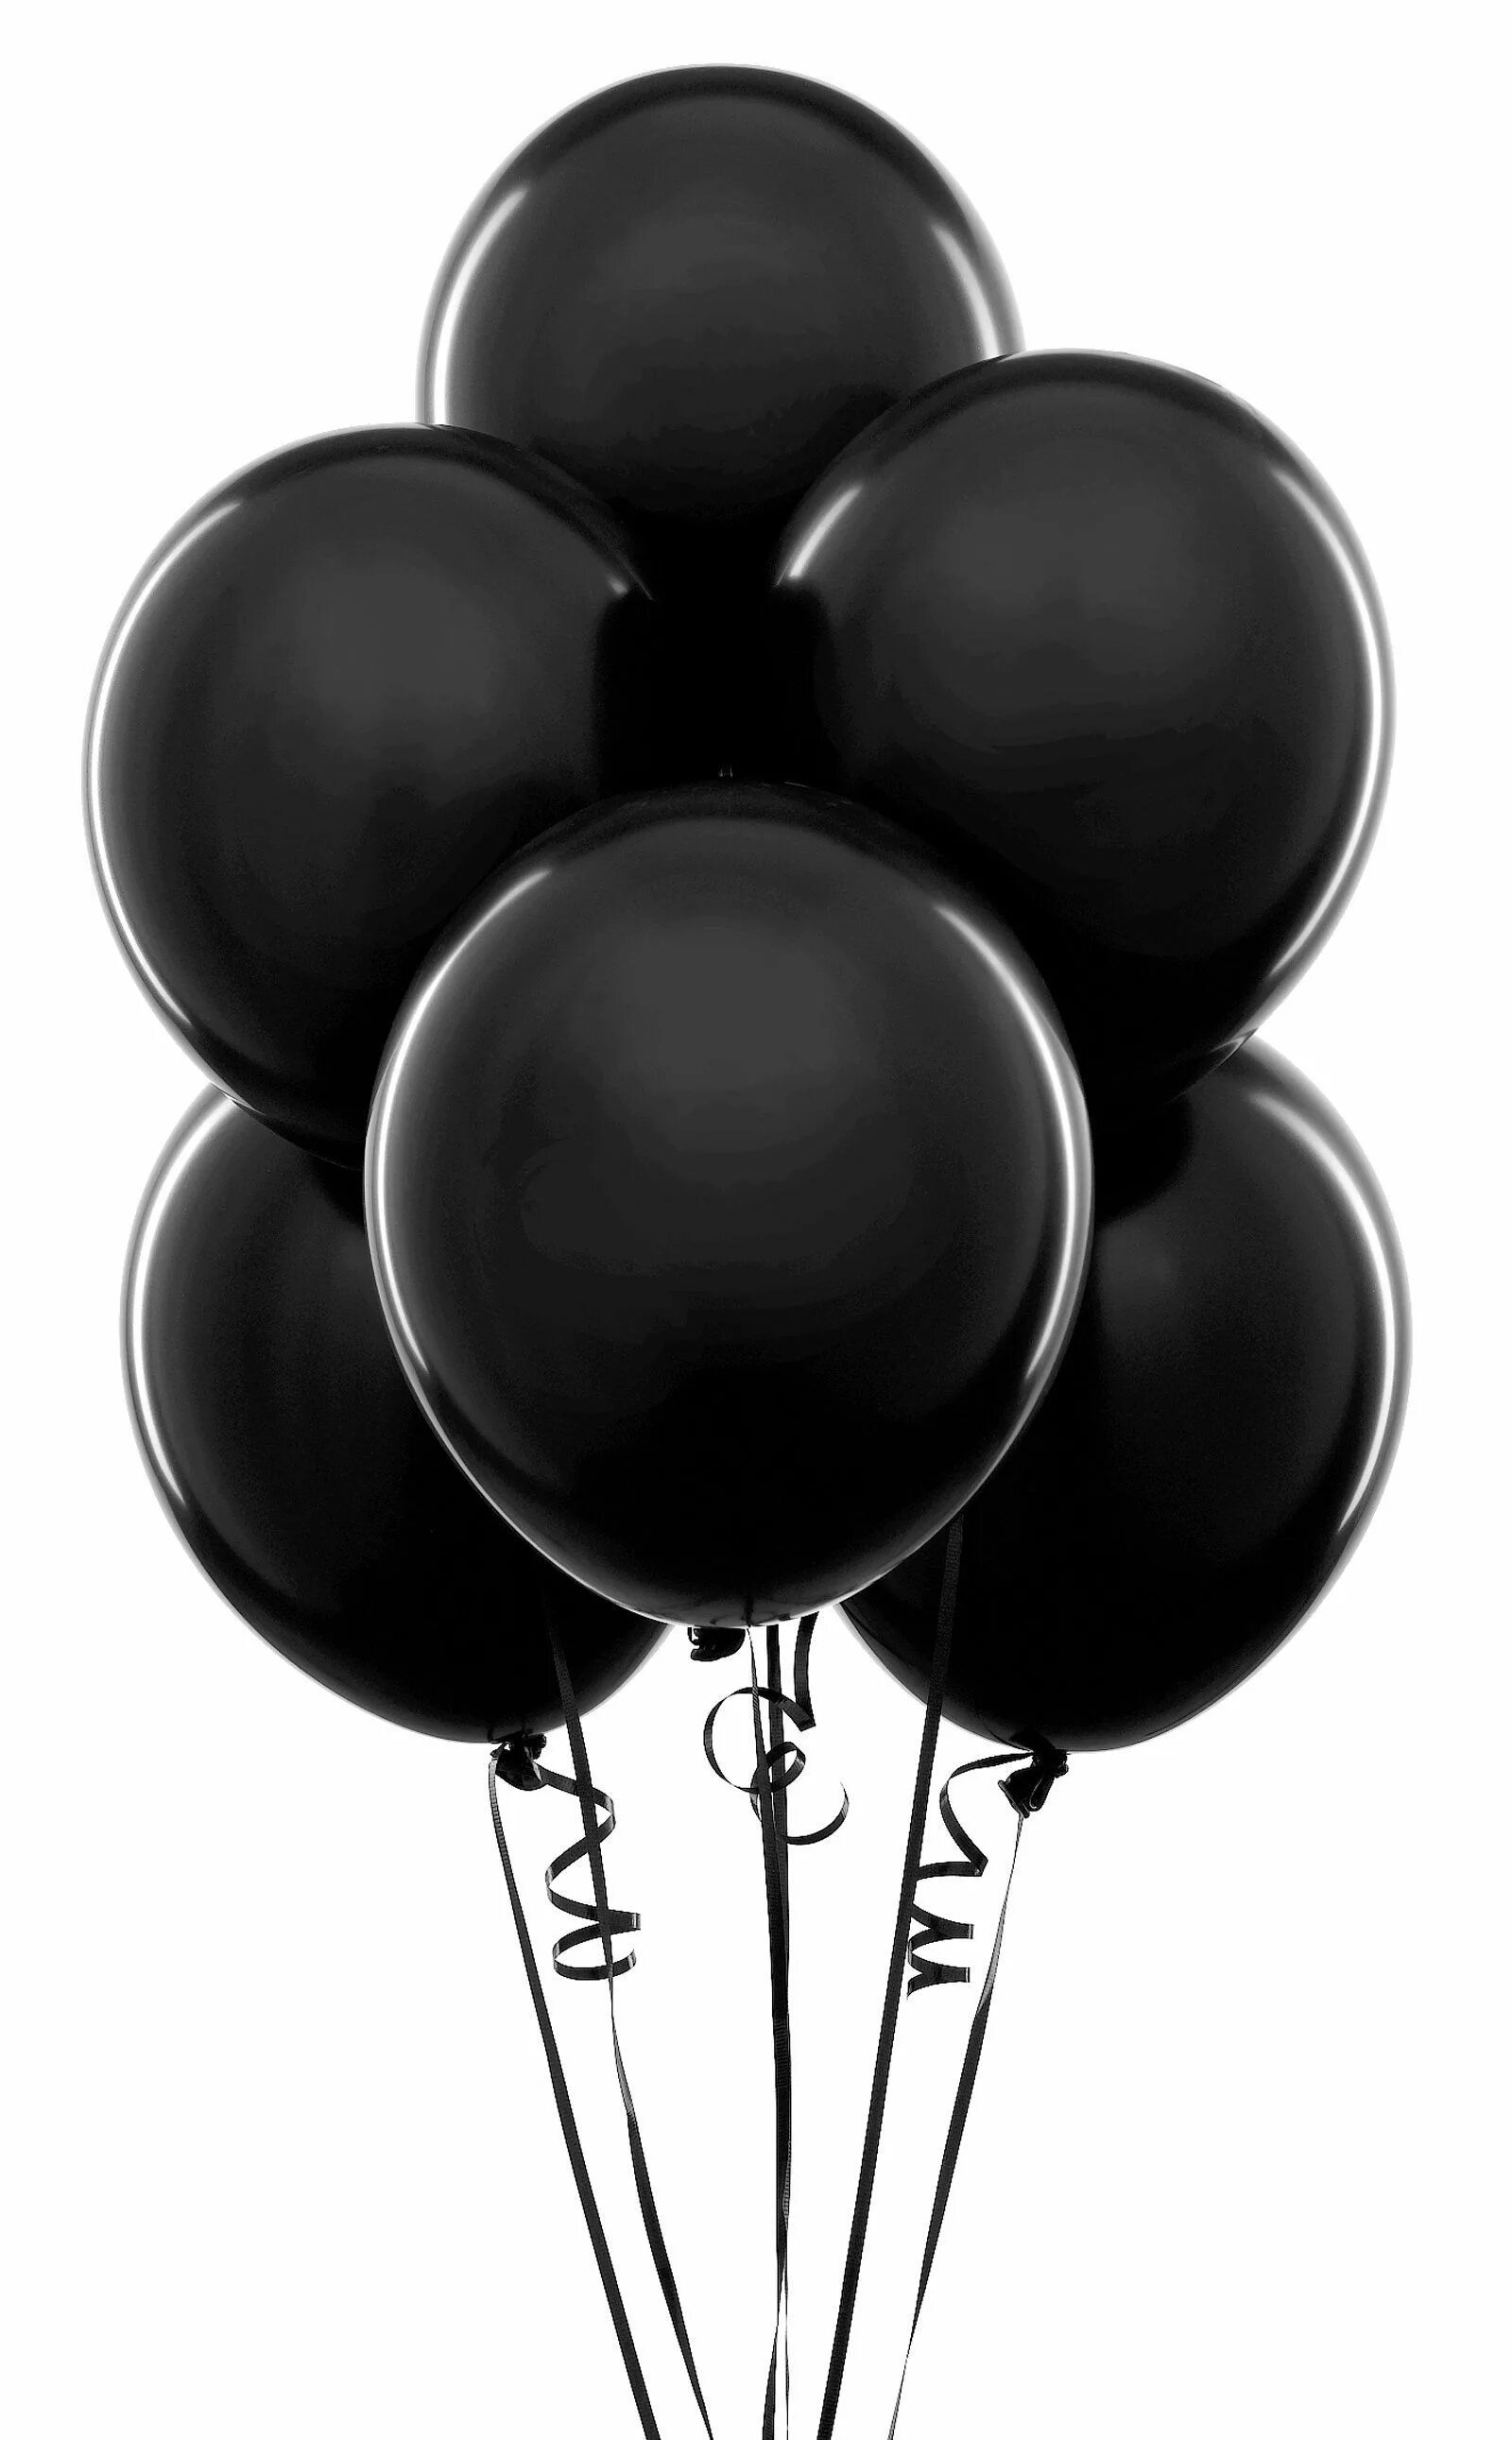 “Черный шар” (the Black Balloon), 2008. Черные воздушные шары. Шары в черном цвете. Черно-белые воздушные шары. Про черного шарика